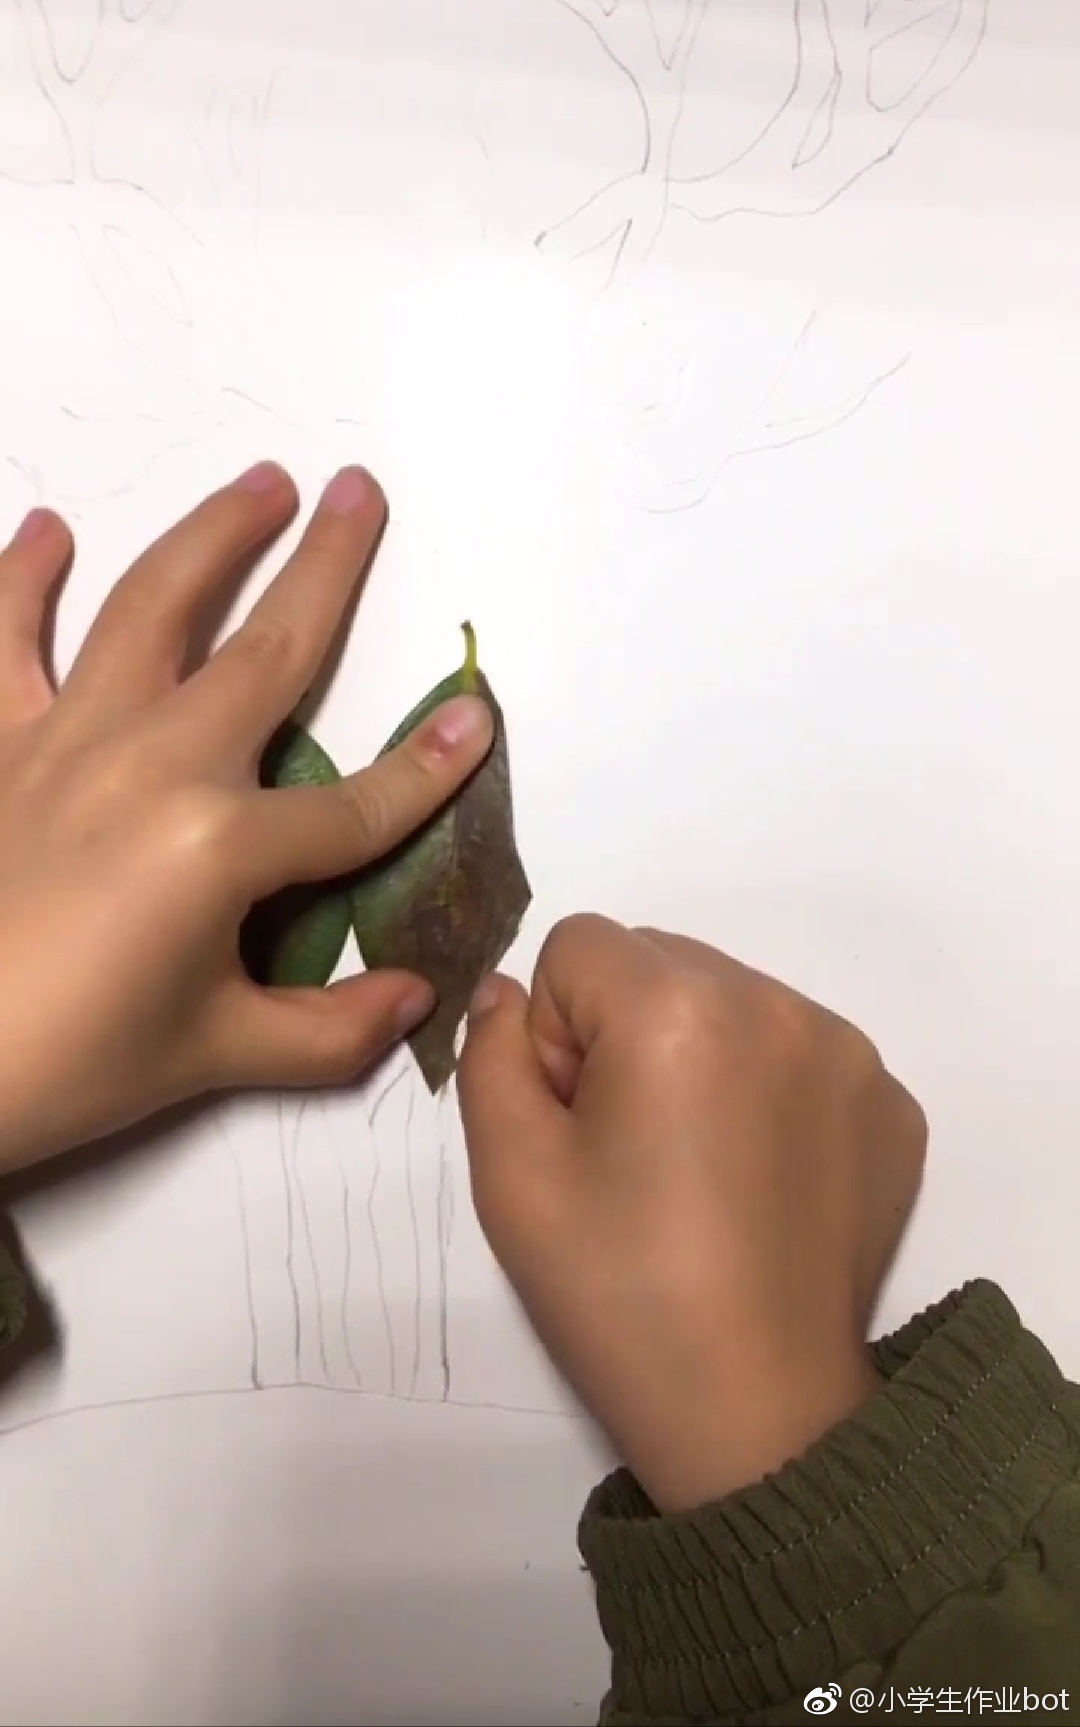 分享一小学生手工树叶画作品 鹿在风起时 ​​​​